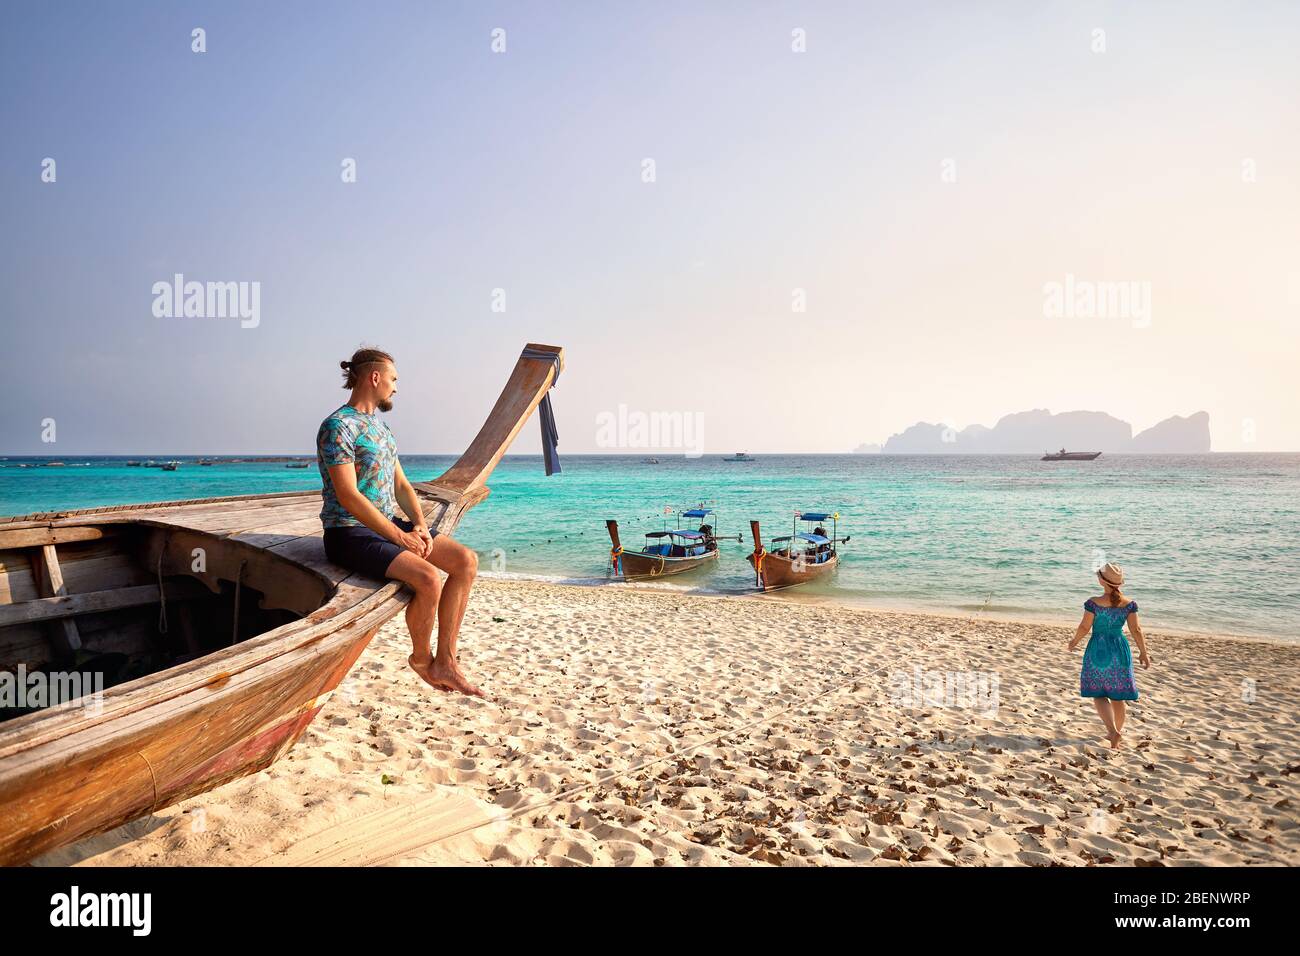 L'uomo sulla barca dalla coda lunga e le donne a piedi al mare sulla spiaggia tropicale di Phi Phi island nel sud della Thailandia. Travel Magazine Concept. Foto Stock